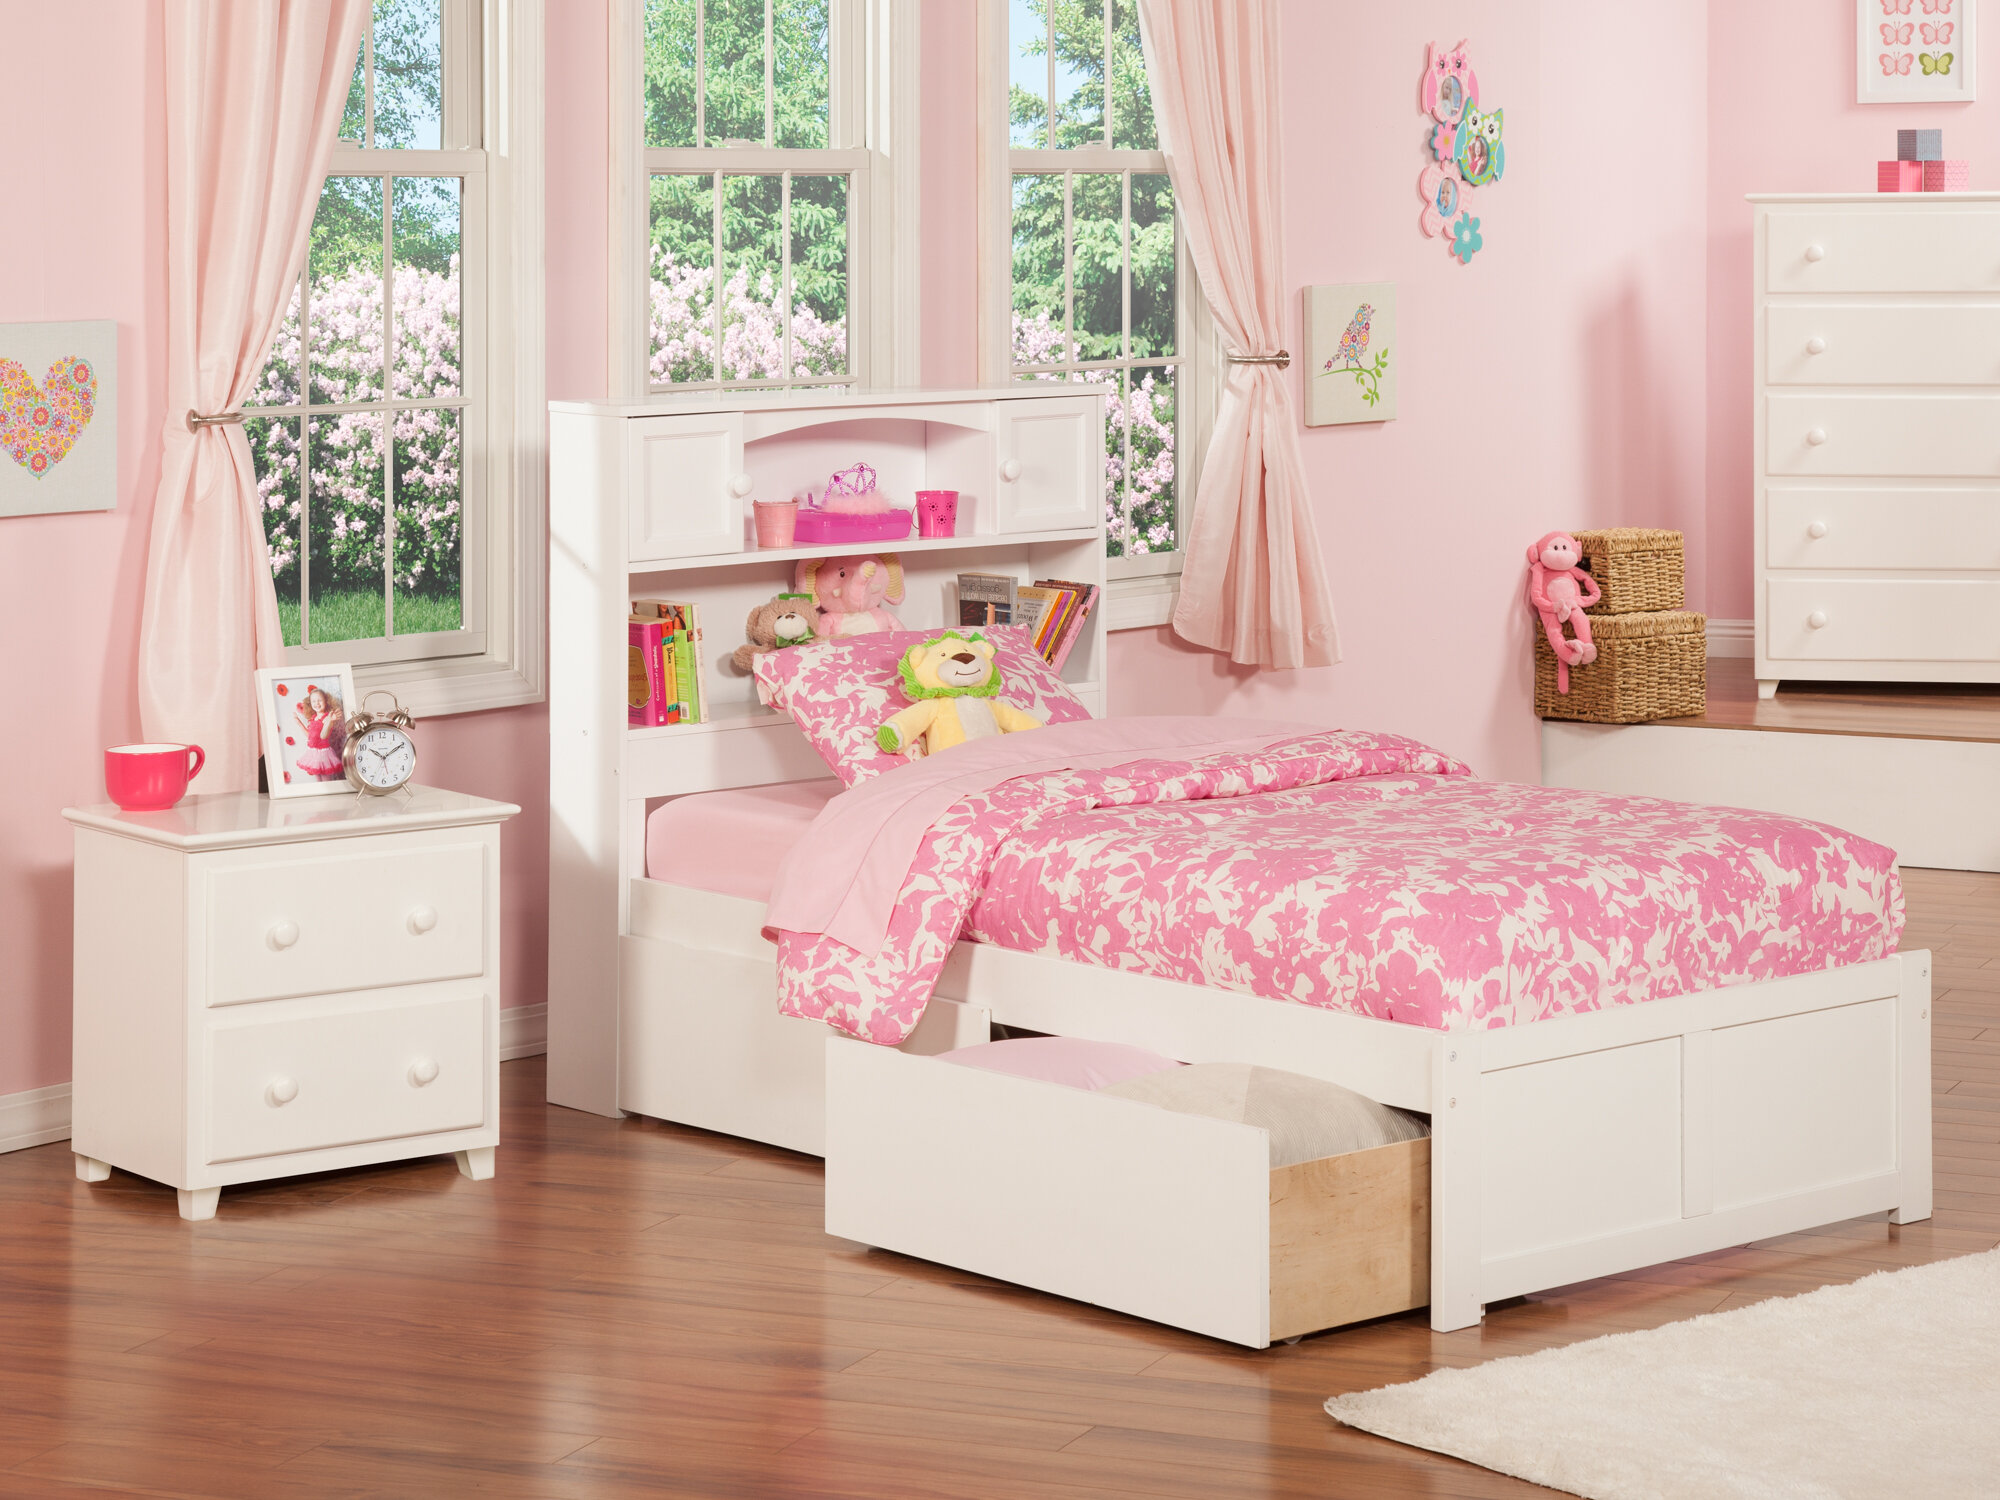 childrens bedroom furniture sale